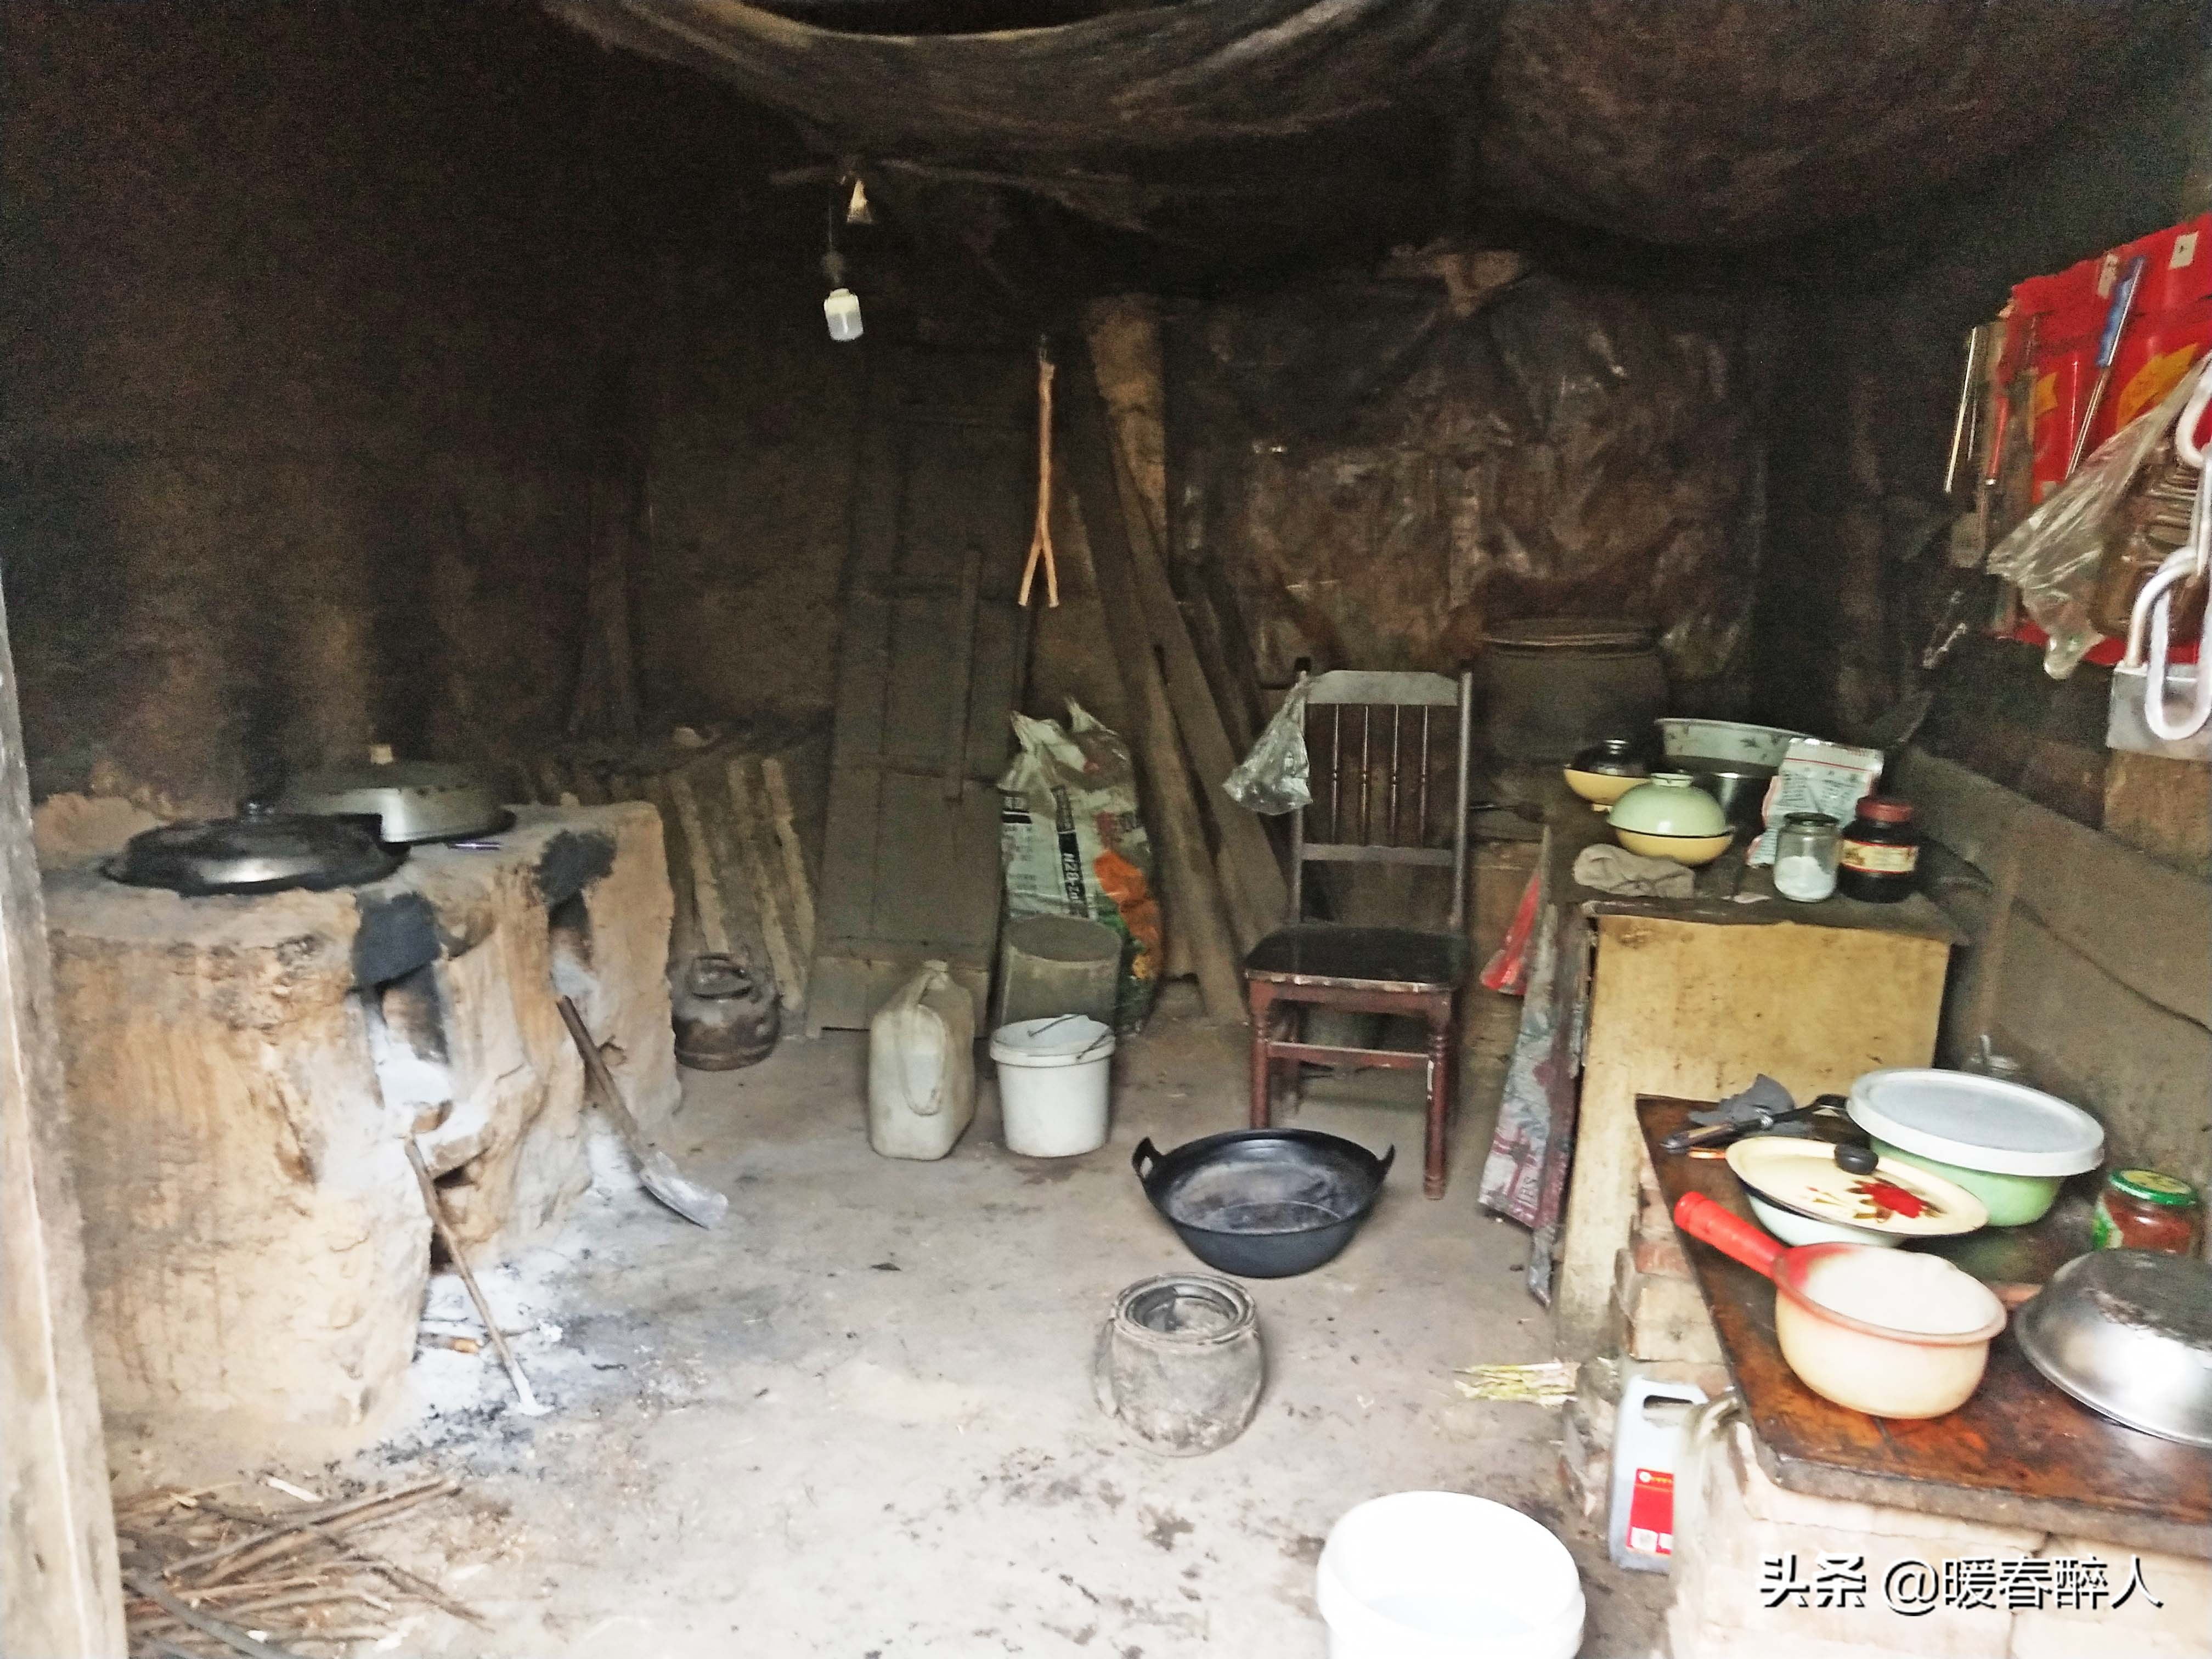 秦岭山区耄耋老人的家:破旧房子,最值钱的是3节铝笼节